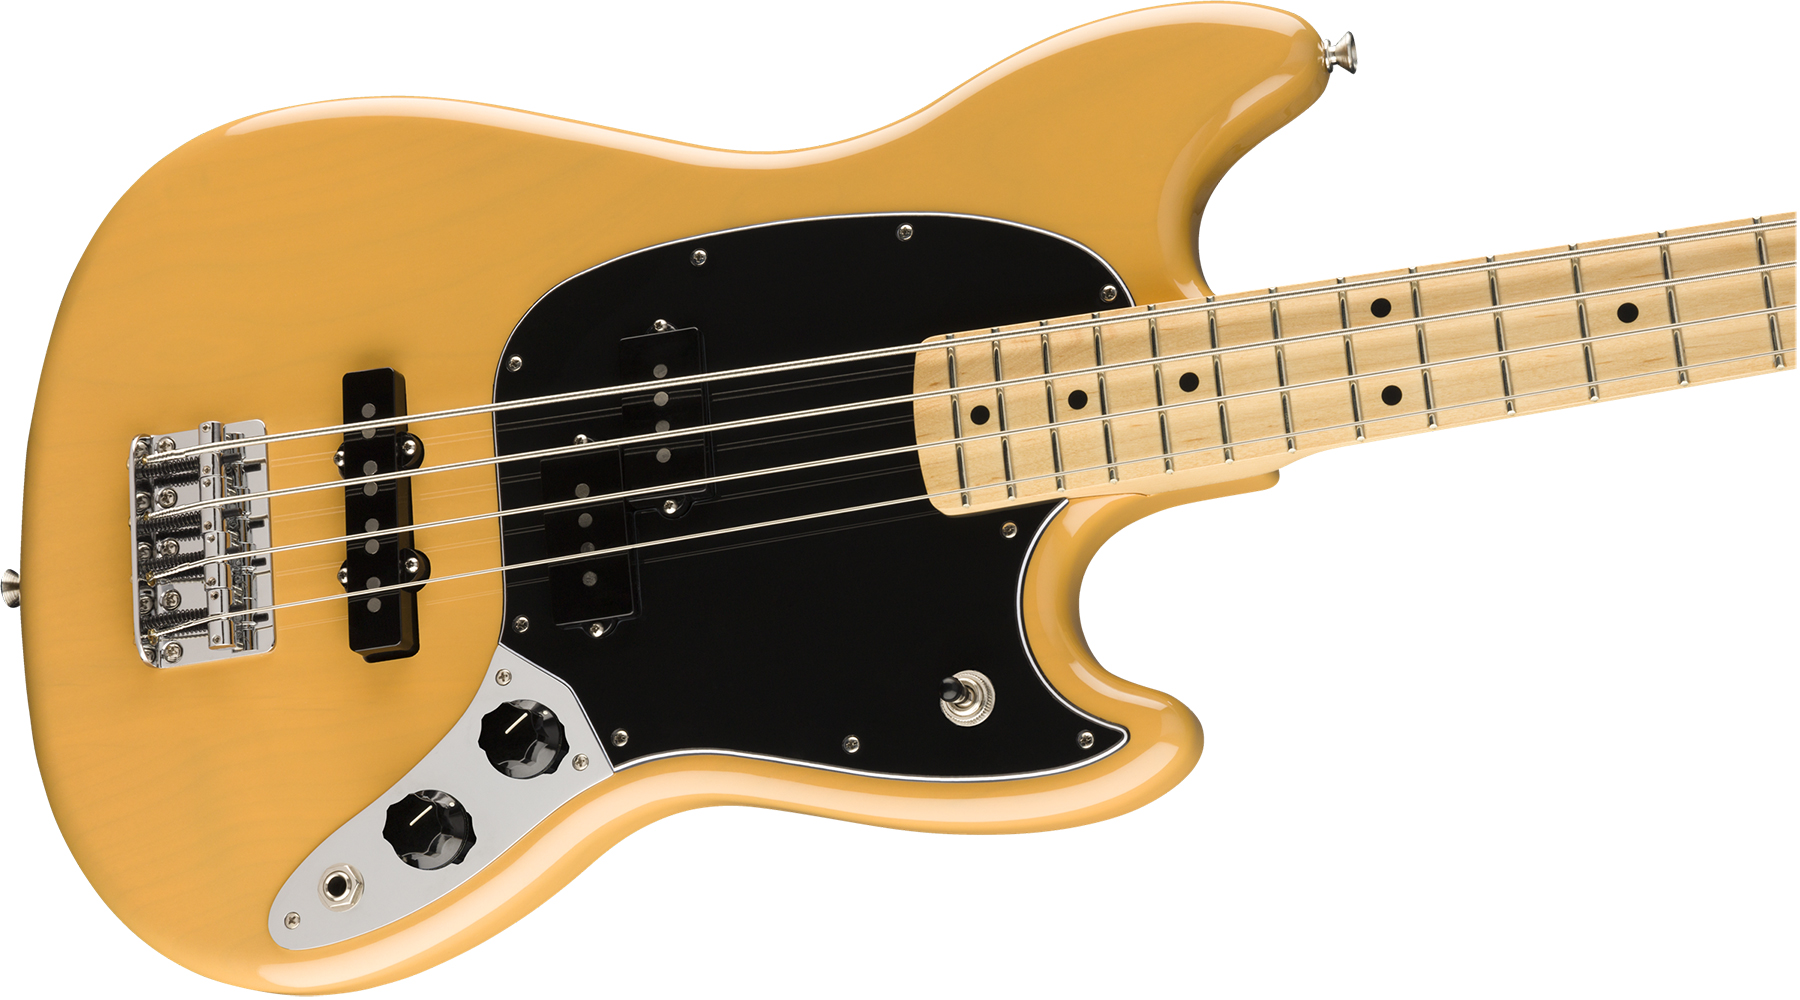 Fender Mustang Bass Pj Player Ltd Mex Mn - Butterscotch Blonde - Electric bass for kids - Variation 2